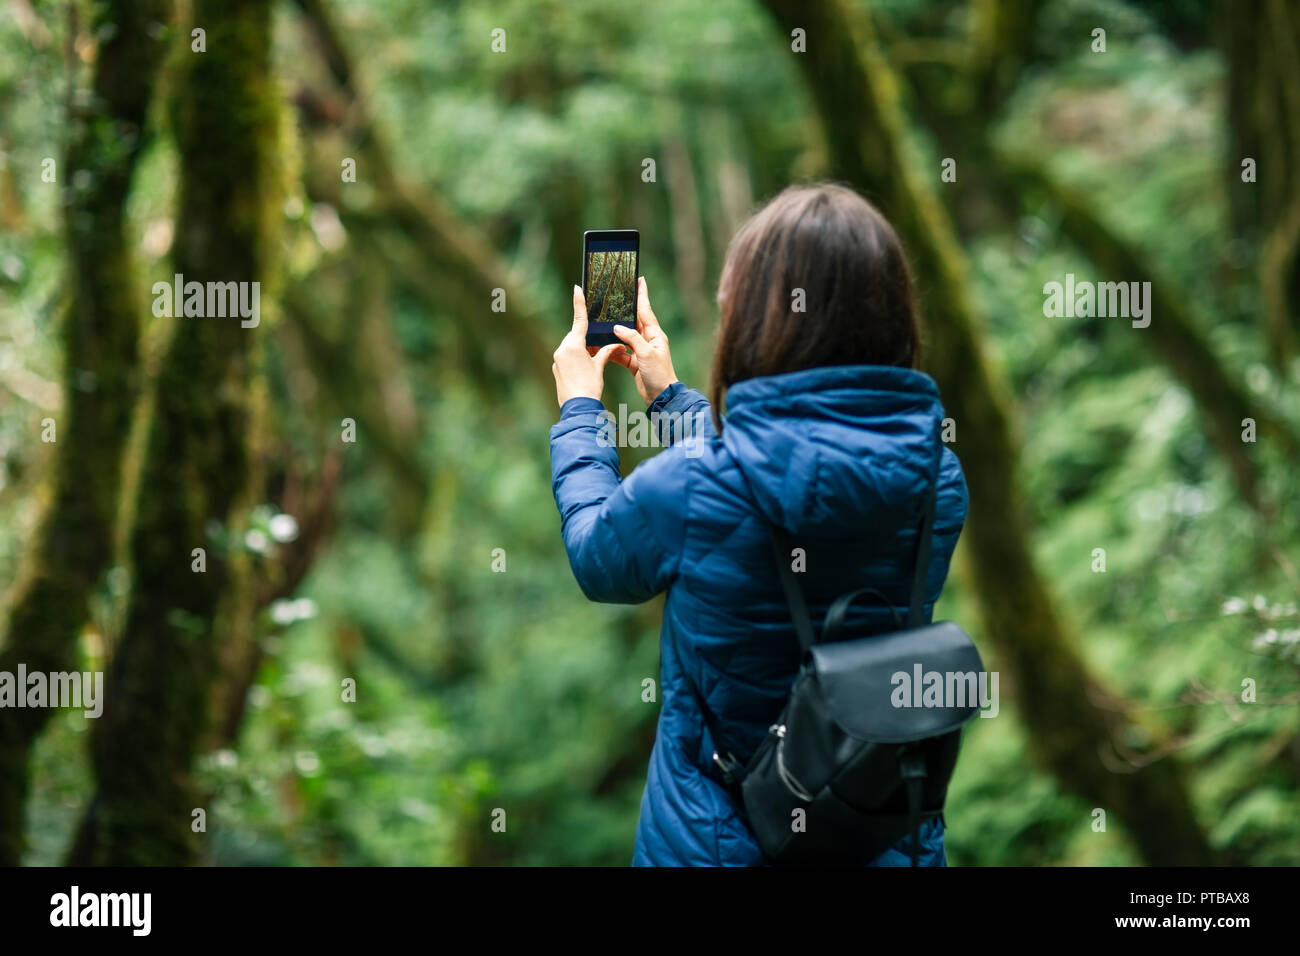 Jeune voyageur femme prend une photo de paysage forestier Banque D'Images